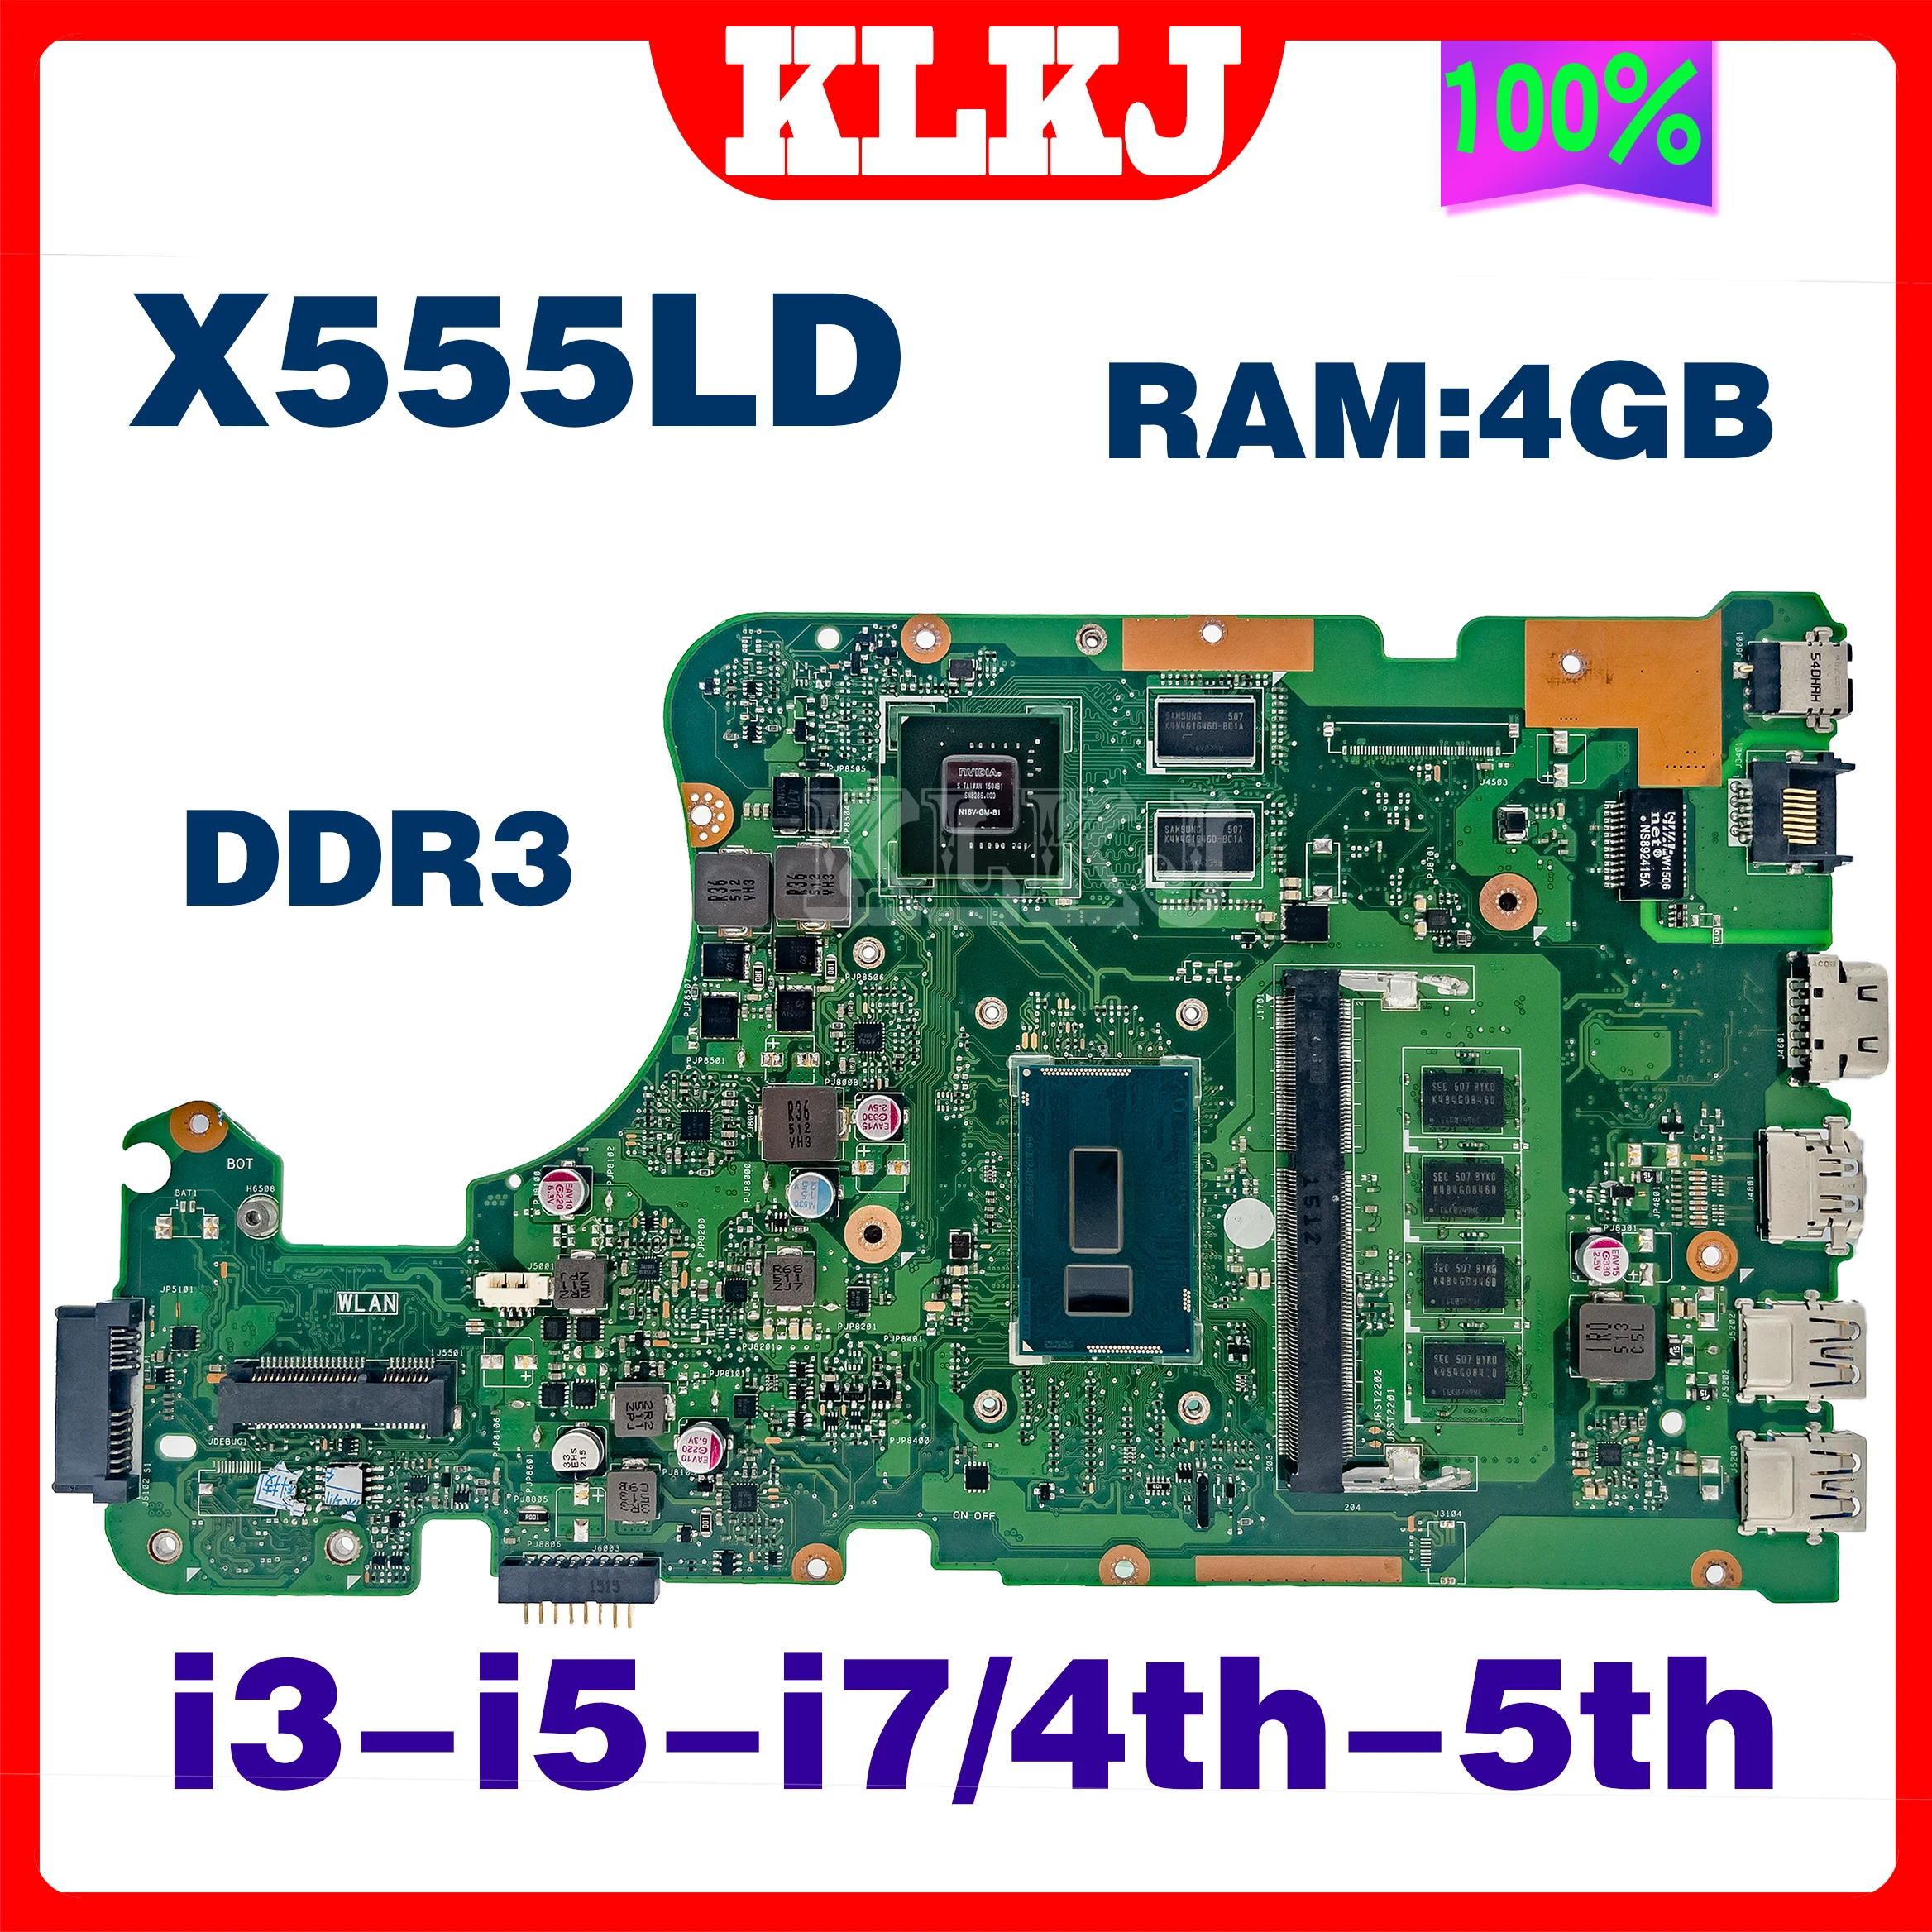 aislamiento En particular ¿Cómo Asus X556u X556ur Motherboard X556uv | Motherboard X555ldb X555ld X555l Asus  - X555ld - Aliexpress